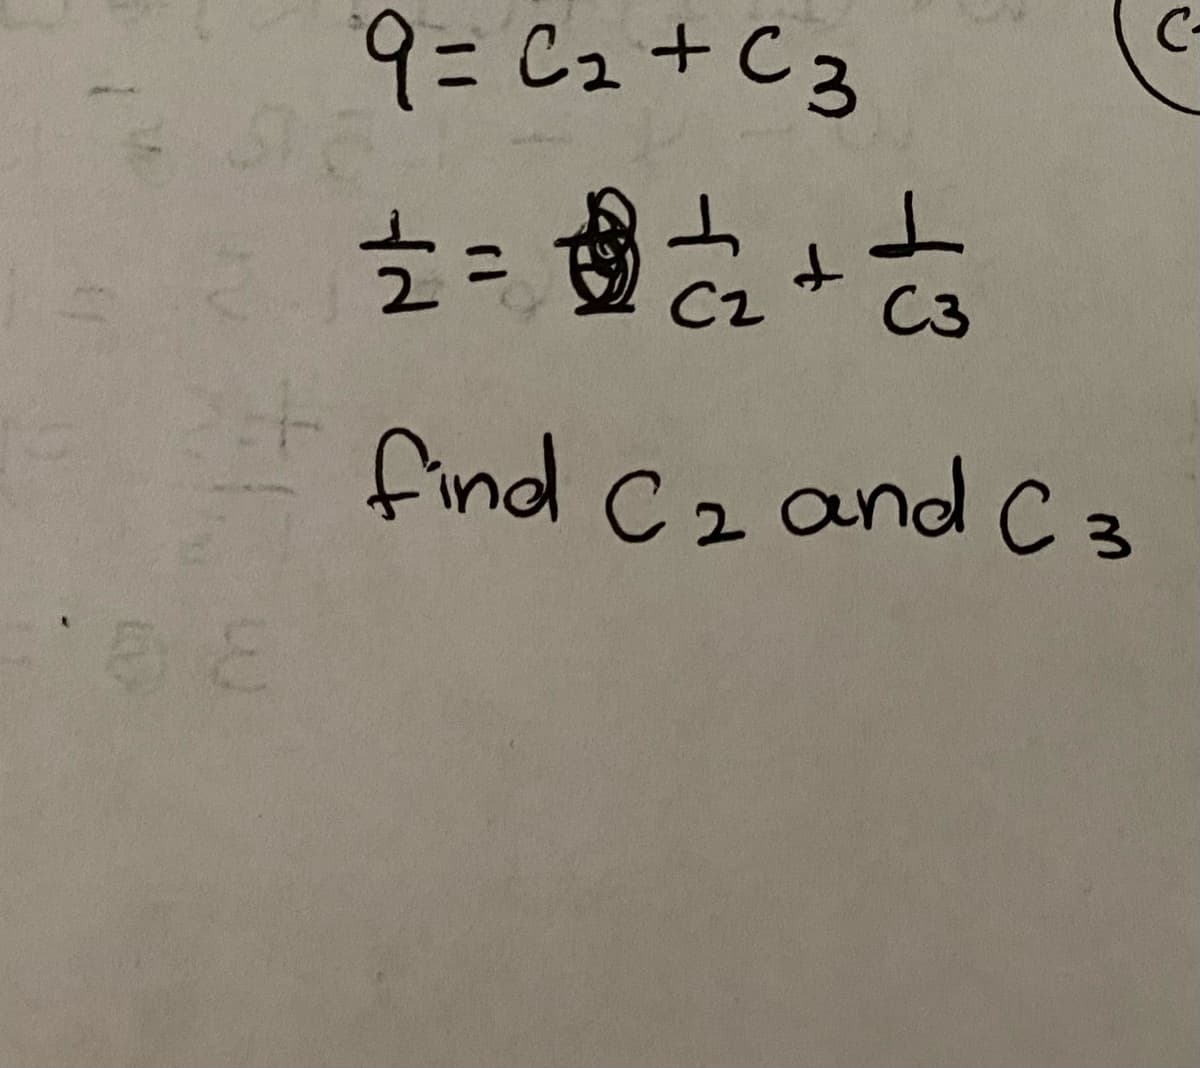 C-
9=C2+C3
C3
find C2 andC 3
